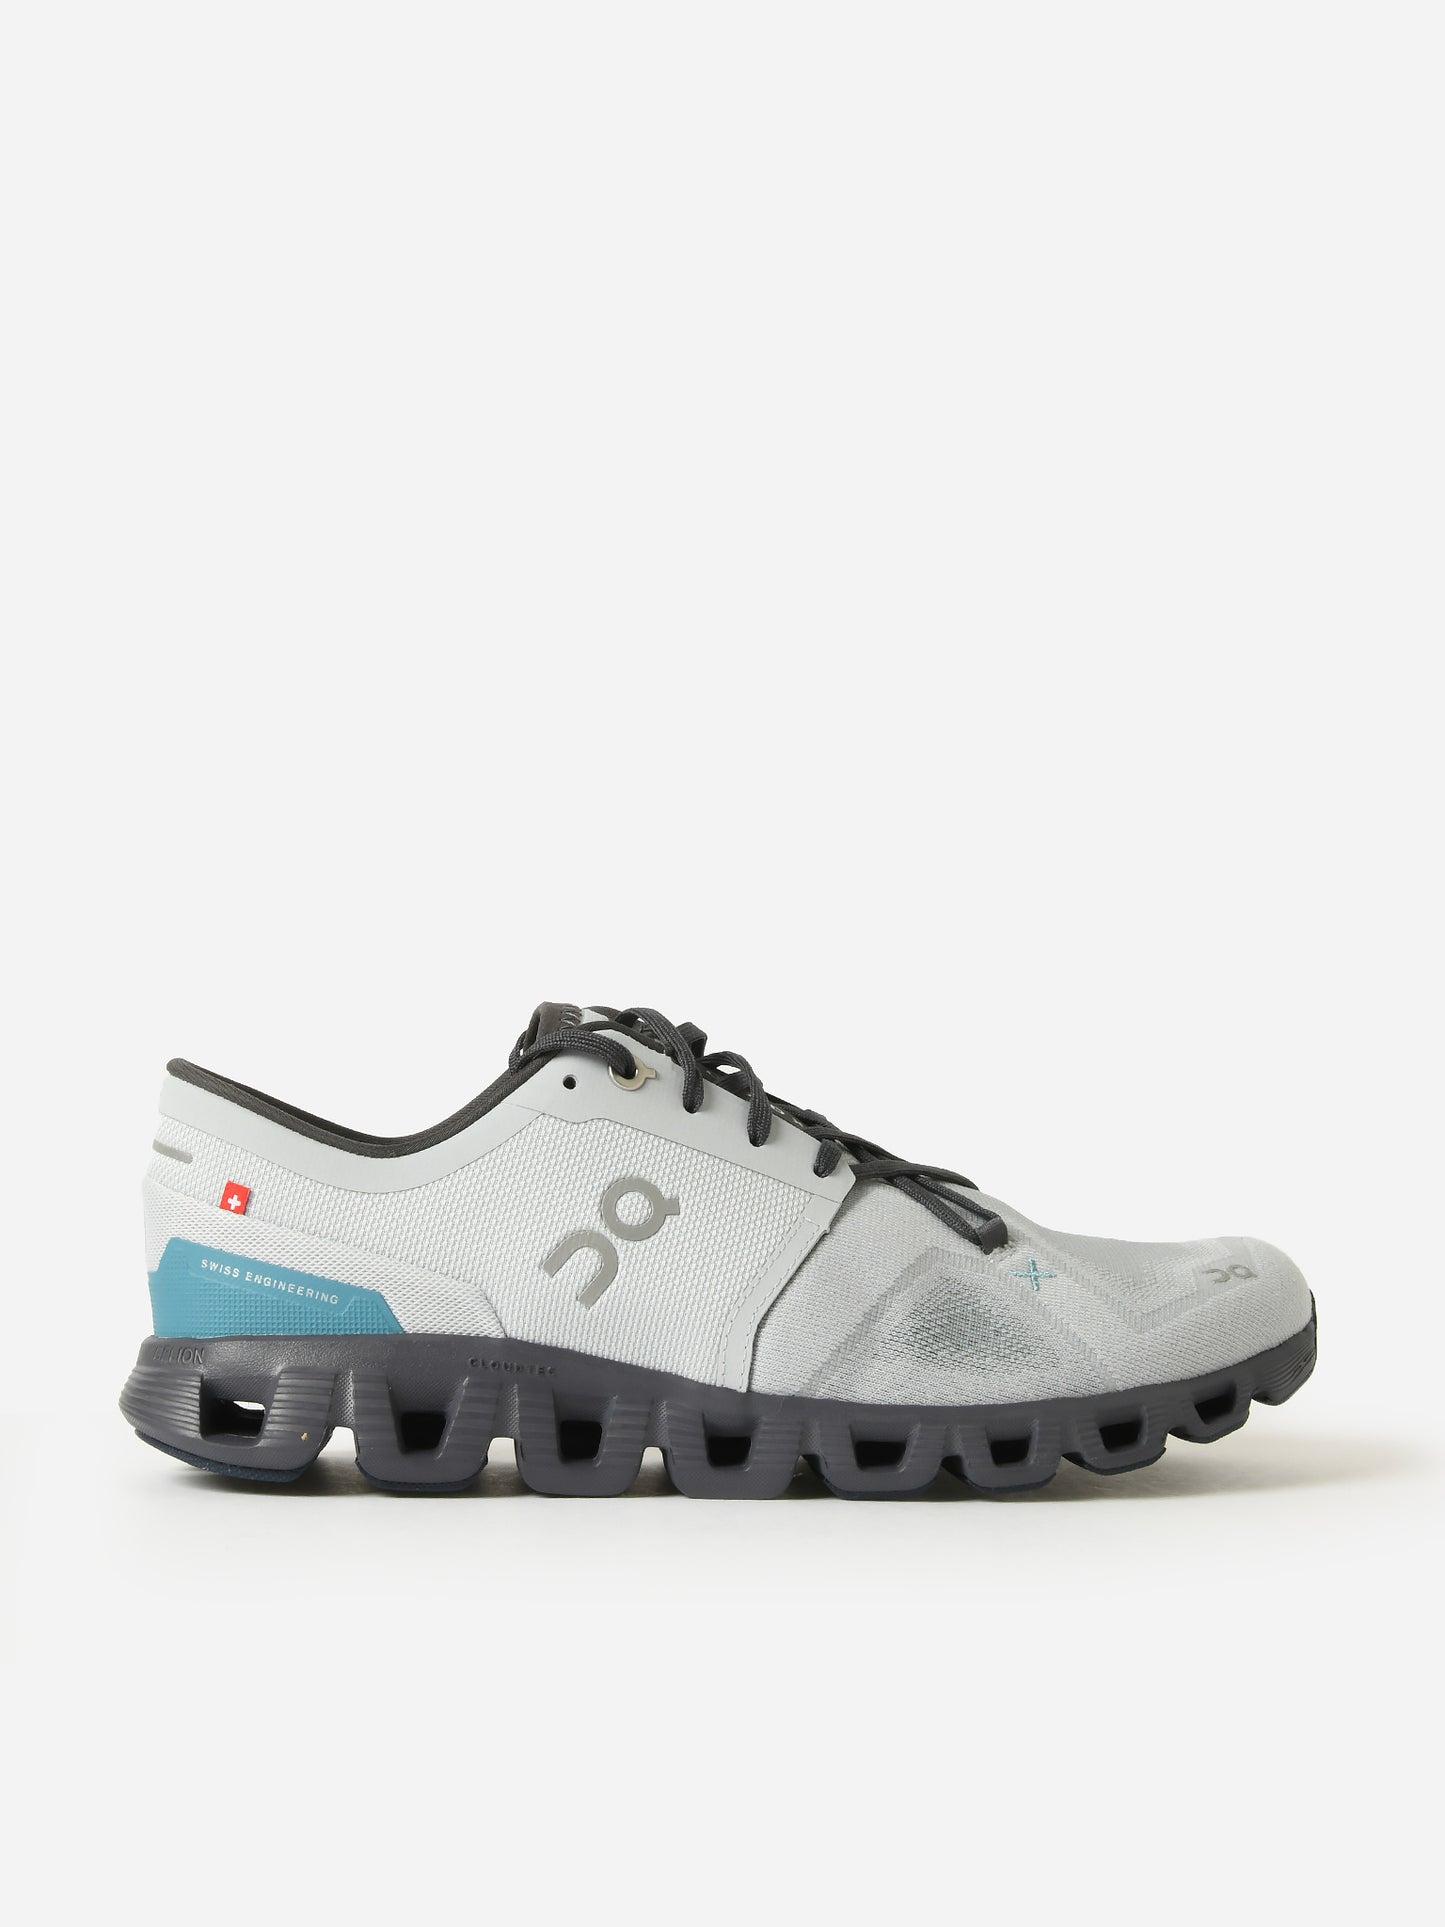 ON Men's Cloud X 3 Running Shoe